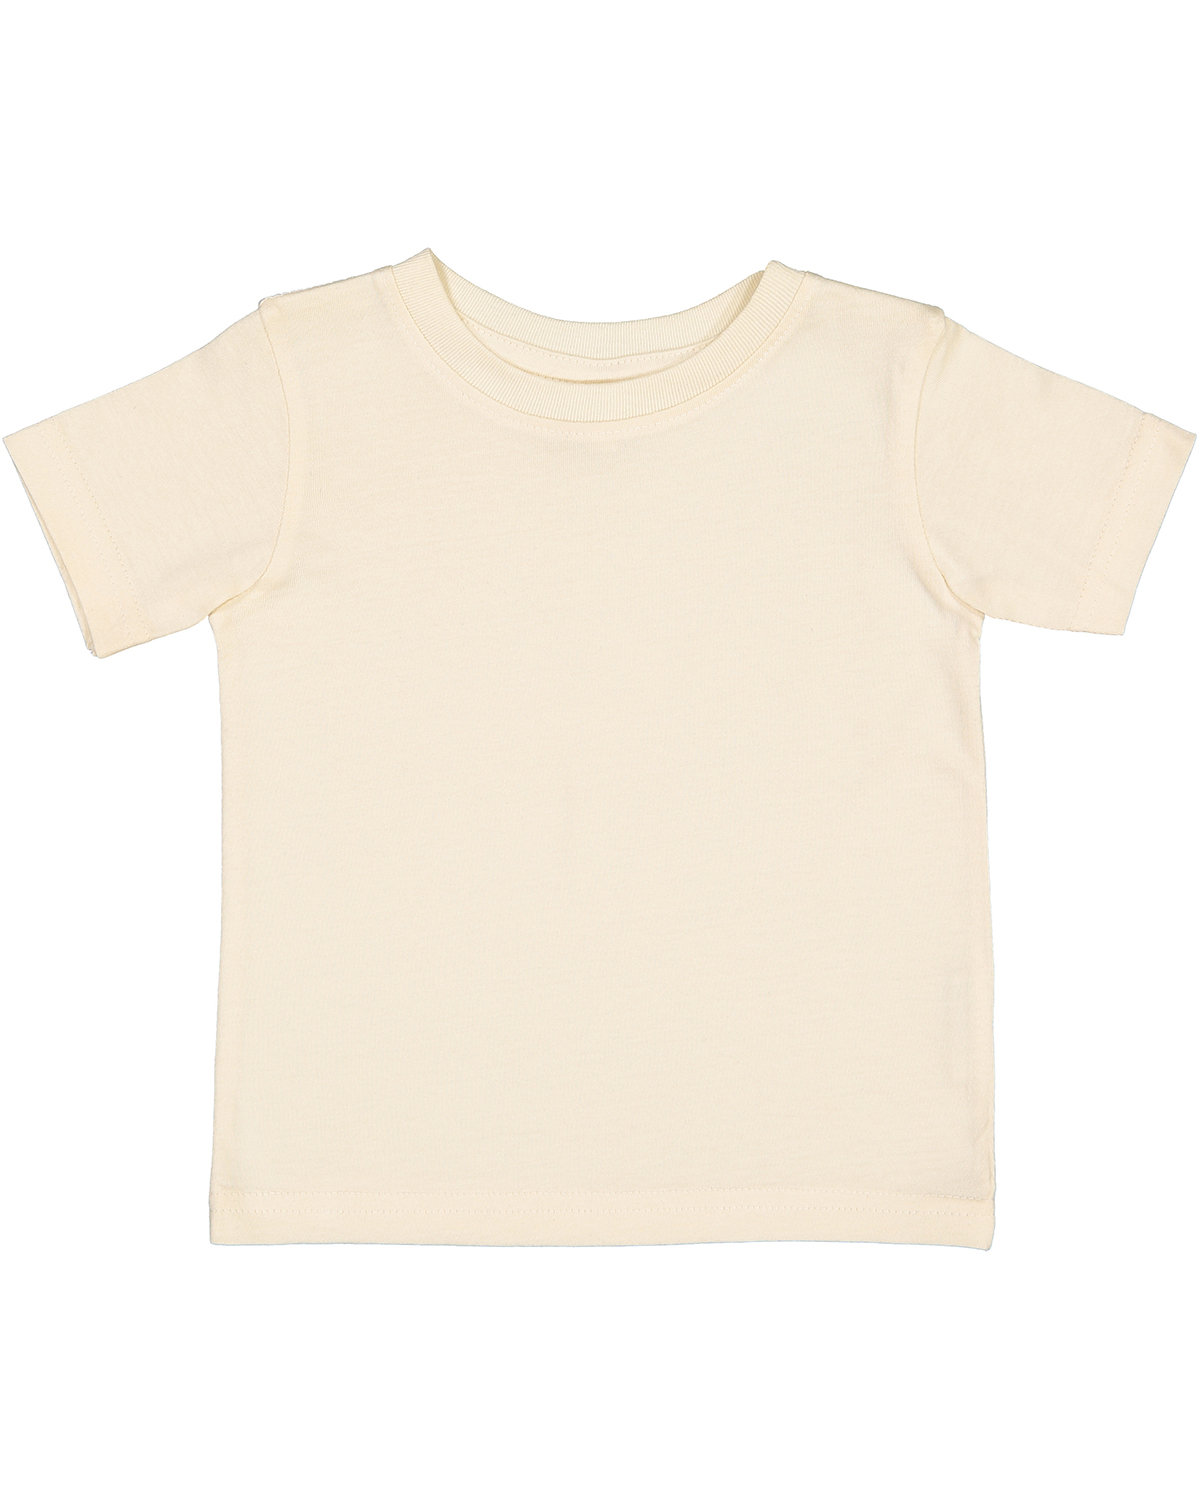 Rabbit Skins Infant Fine Jersey T-Shirt NATURAL 